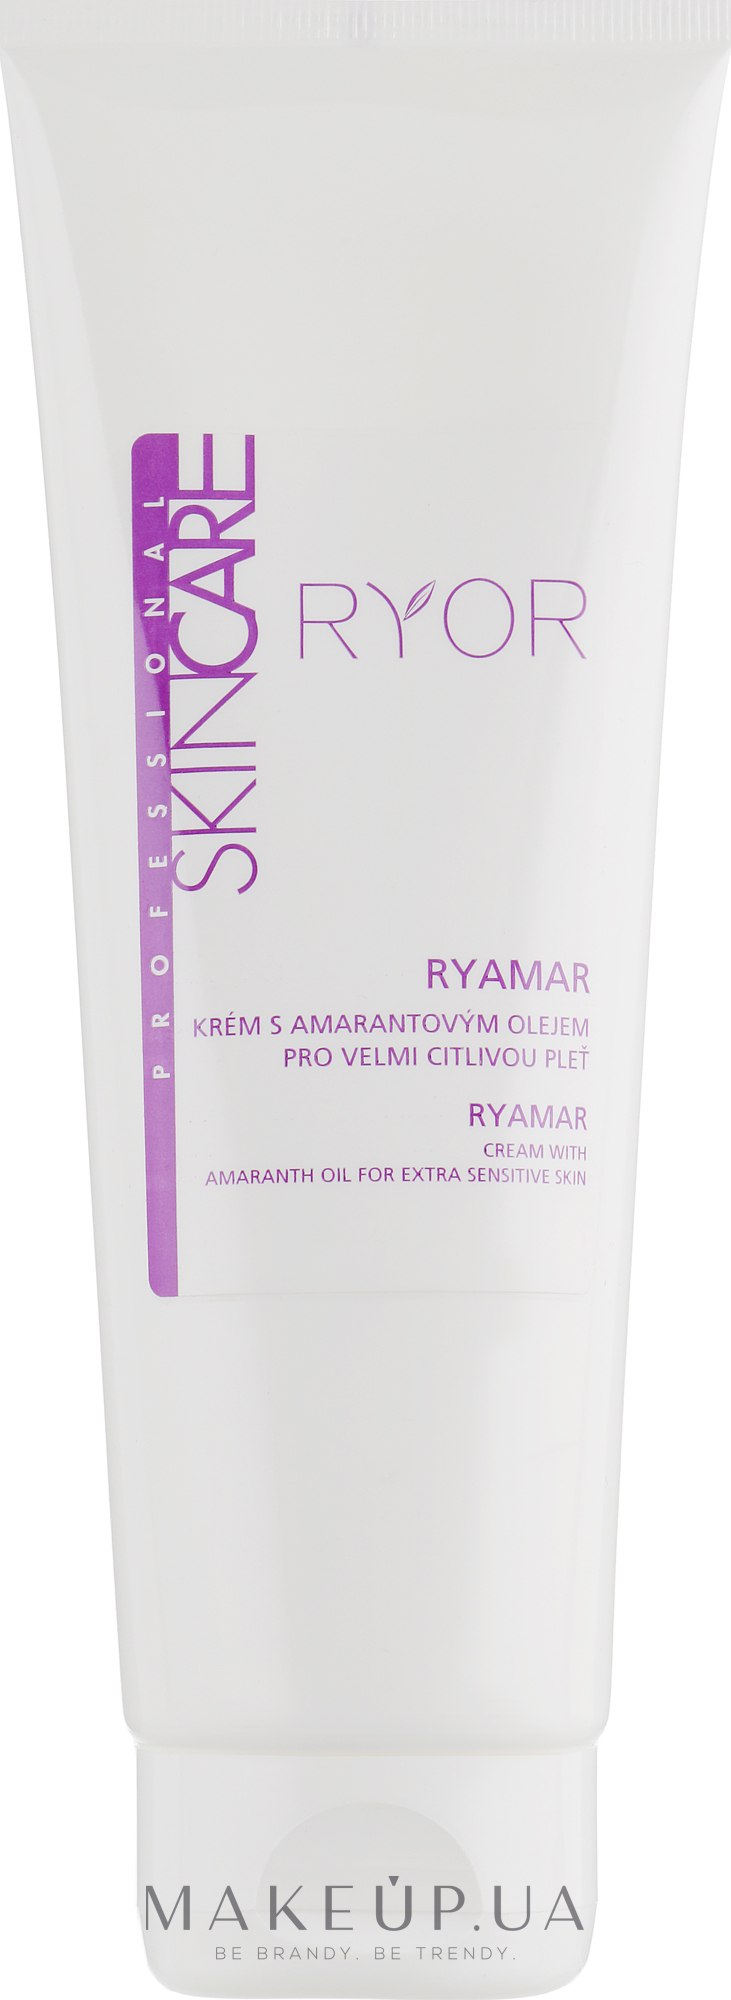 Крем с амарантовым маслом для очень чувствительной кожи - Ryor Ryamar Professional Skin Care — фото 250ml